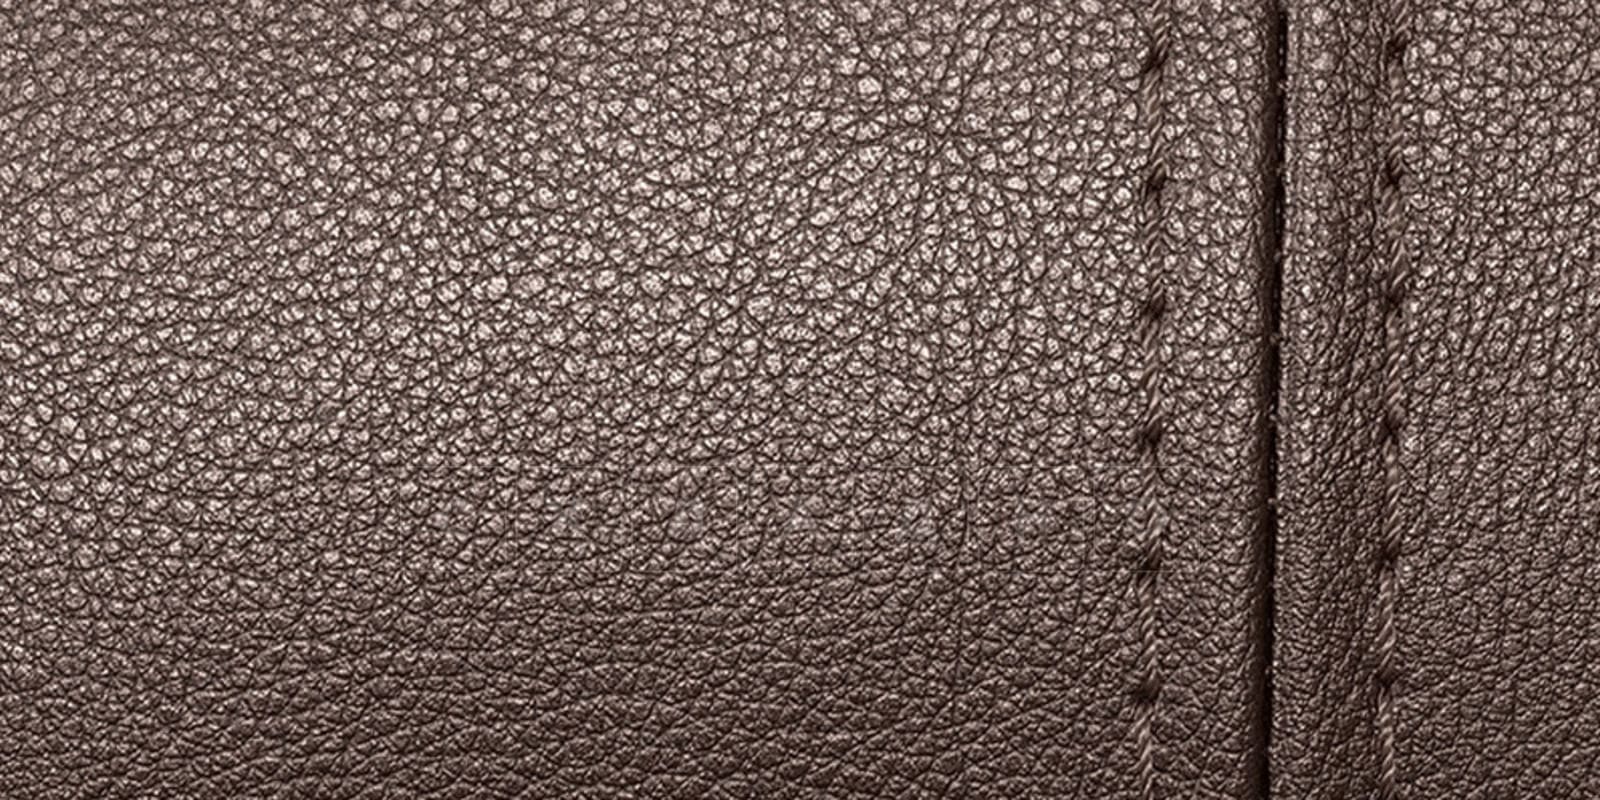 Мягкая кровать Вирджиния 160см экокожа шоколадного цвета фото 8 | интернет-магазин Складно